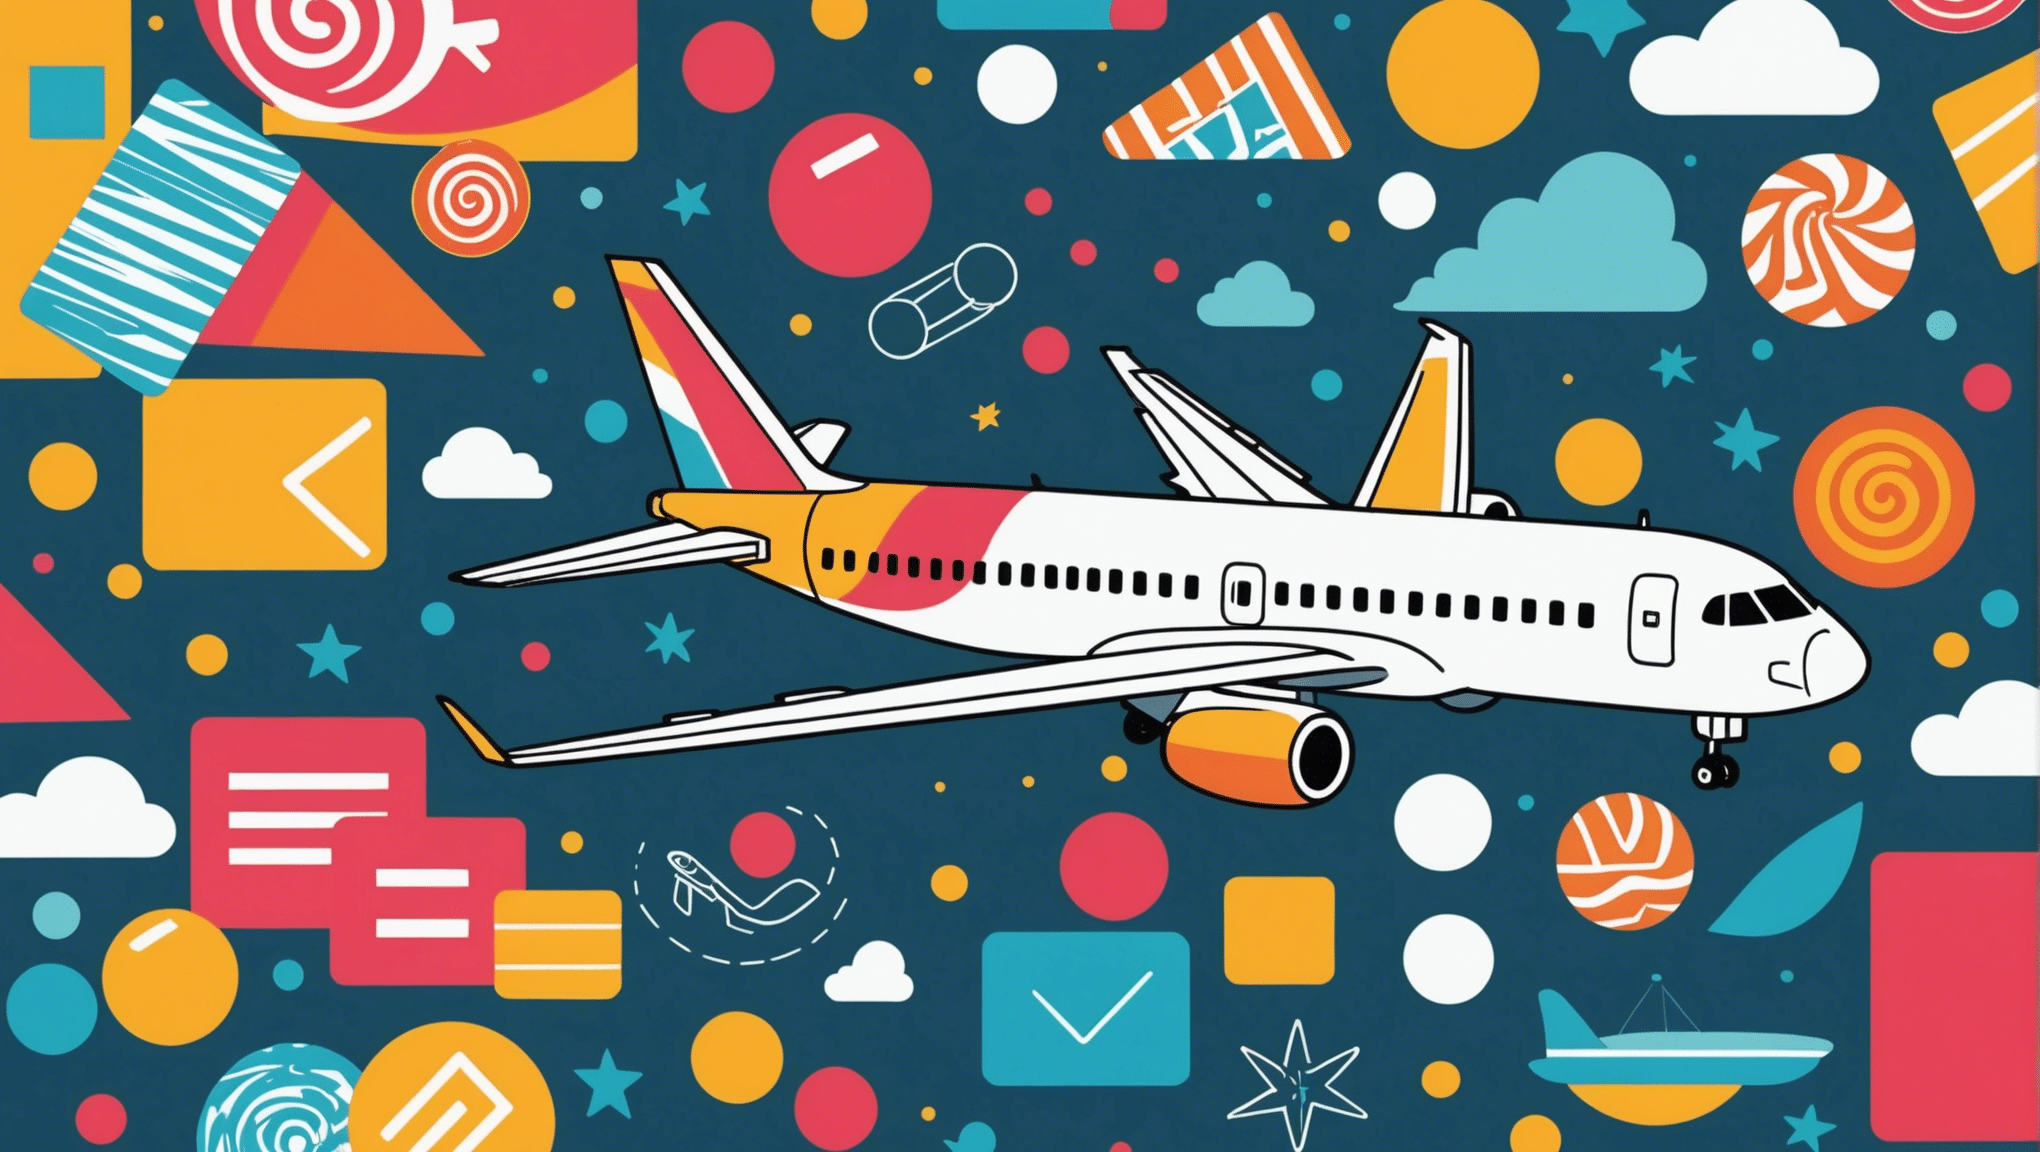 Erfahren Sie mit unseren praktischen Tipps, wie Sie den perfekten Zeitpunkt für den Kauf eines Flugtickets finden und bei Ihren nächsten Reisen sparen.